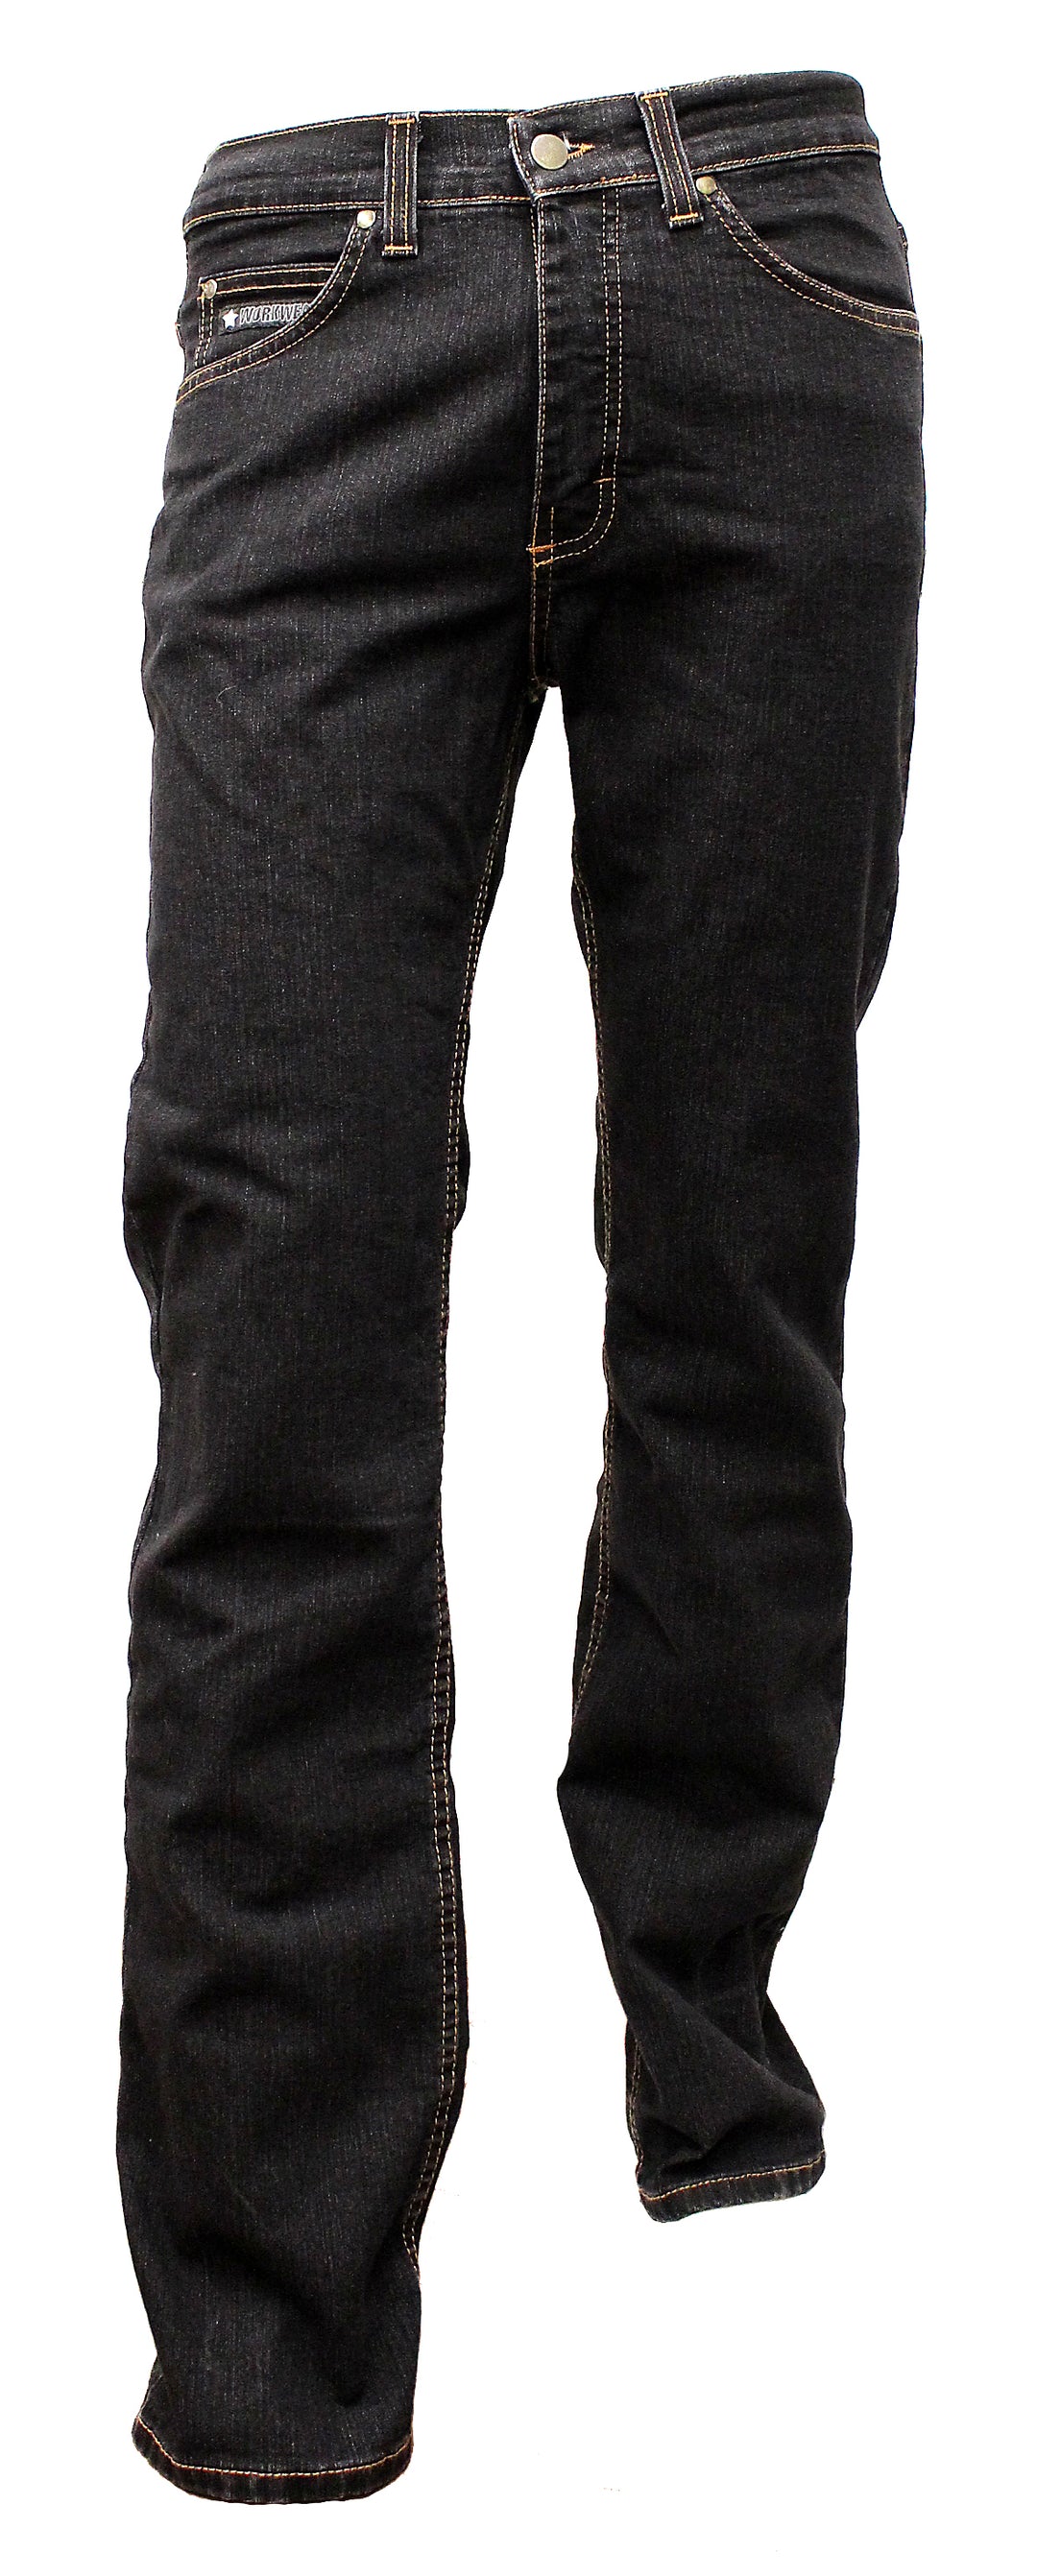 Men's work jeans length 32